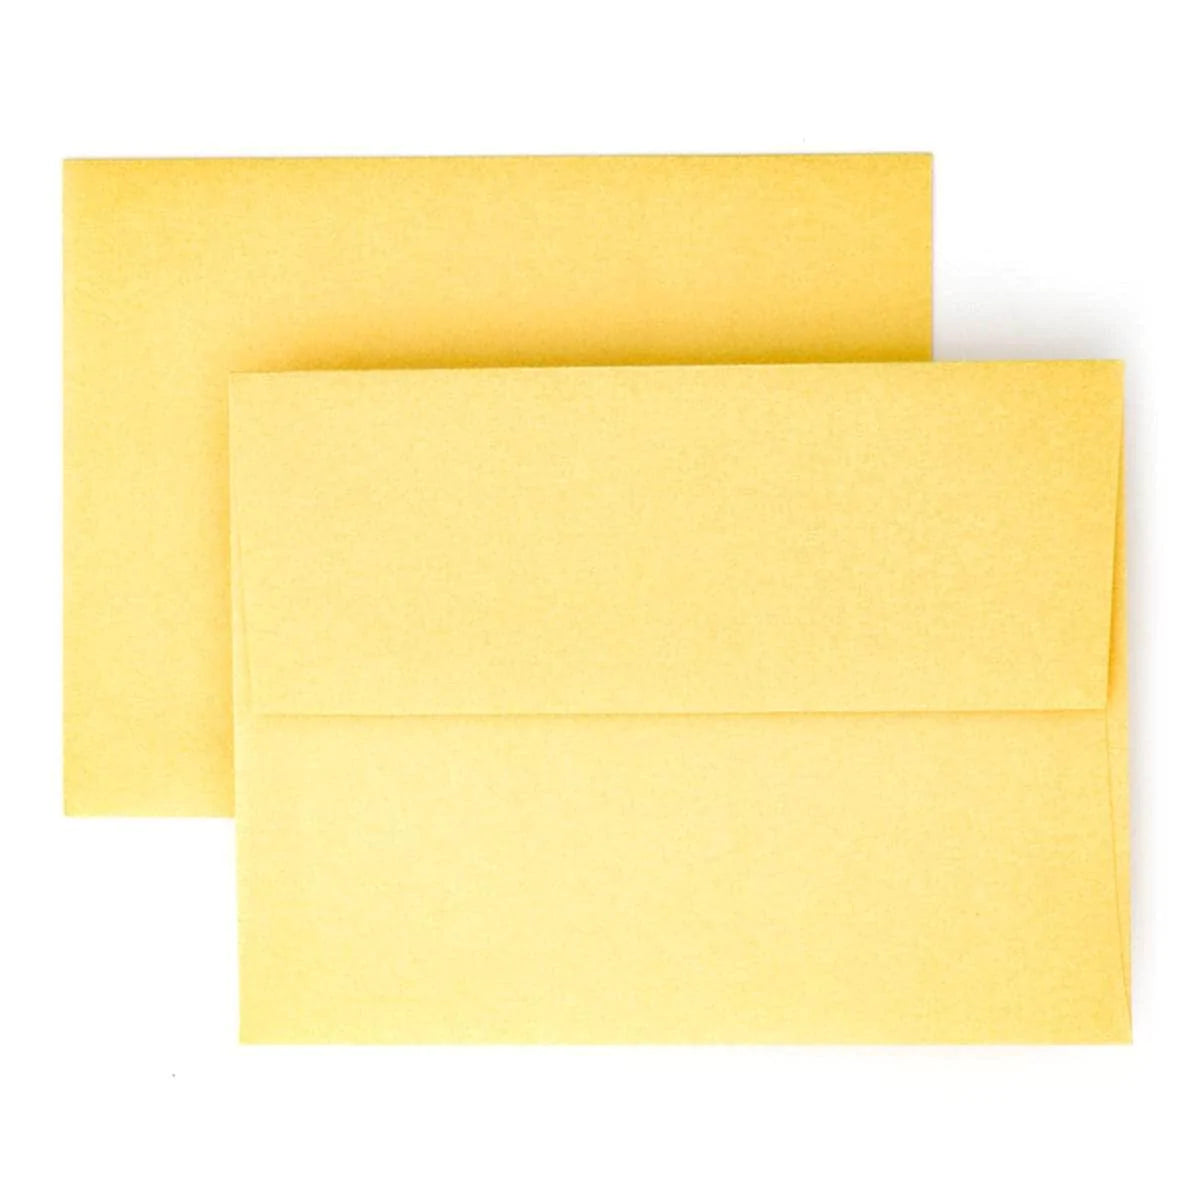 Envelope Polished Gold Envelope (12 envelopes/set)